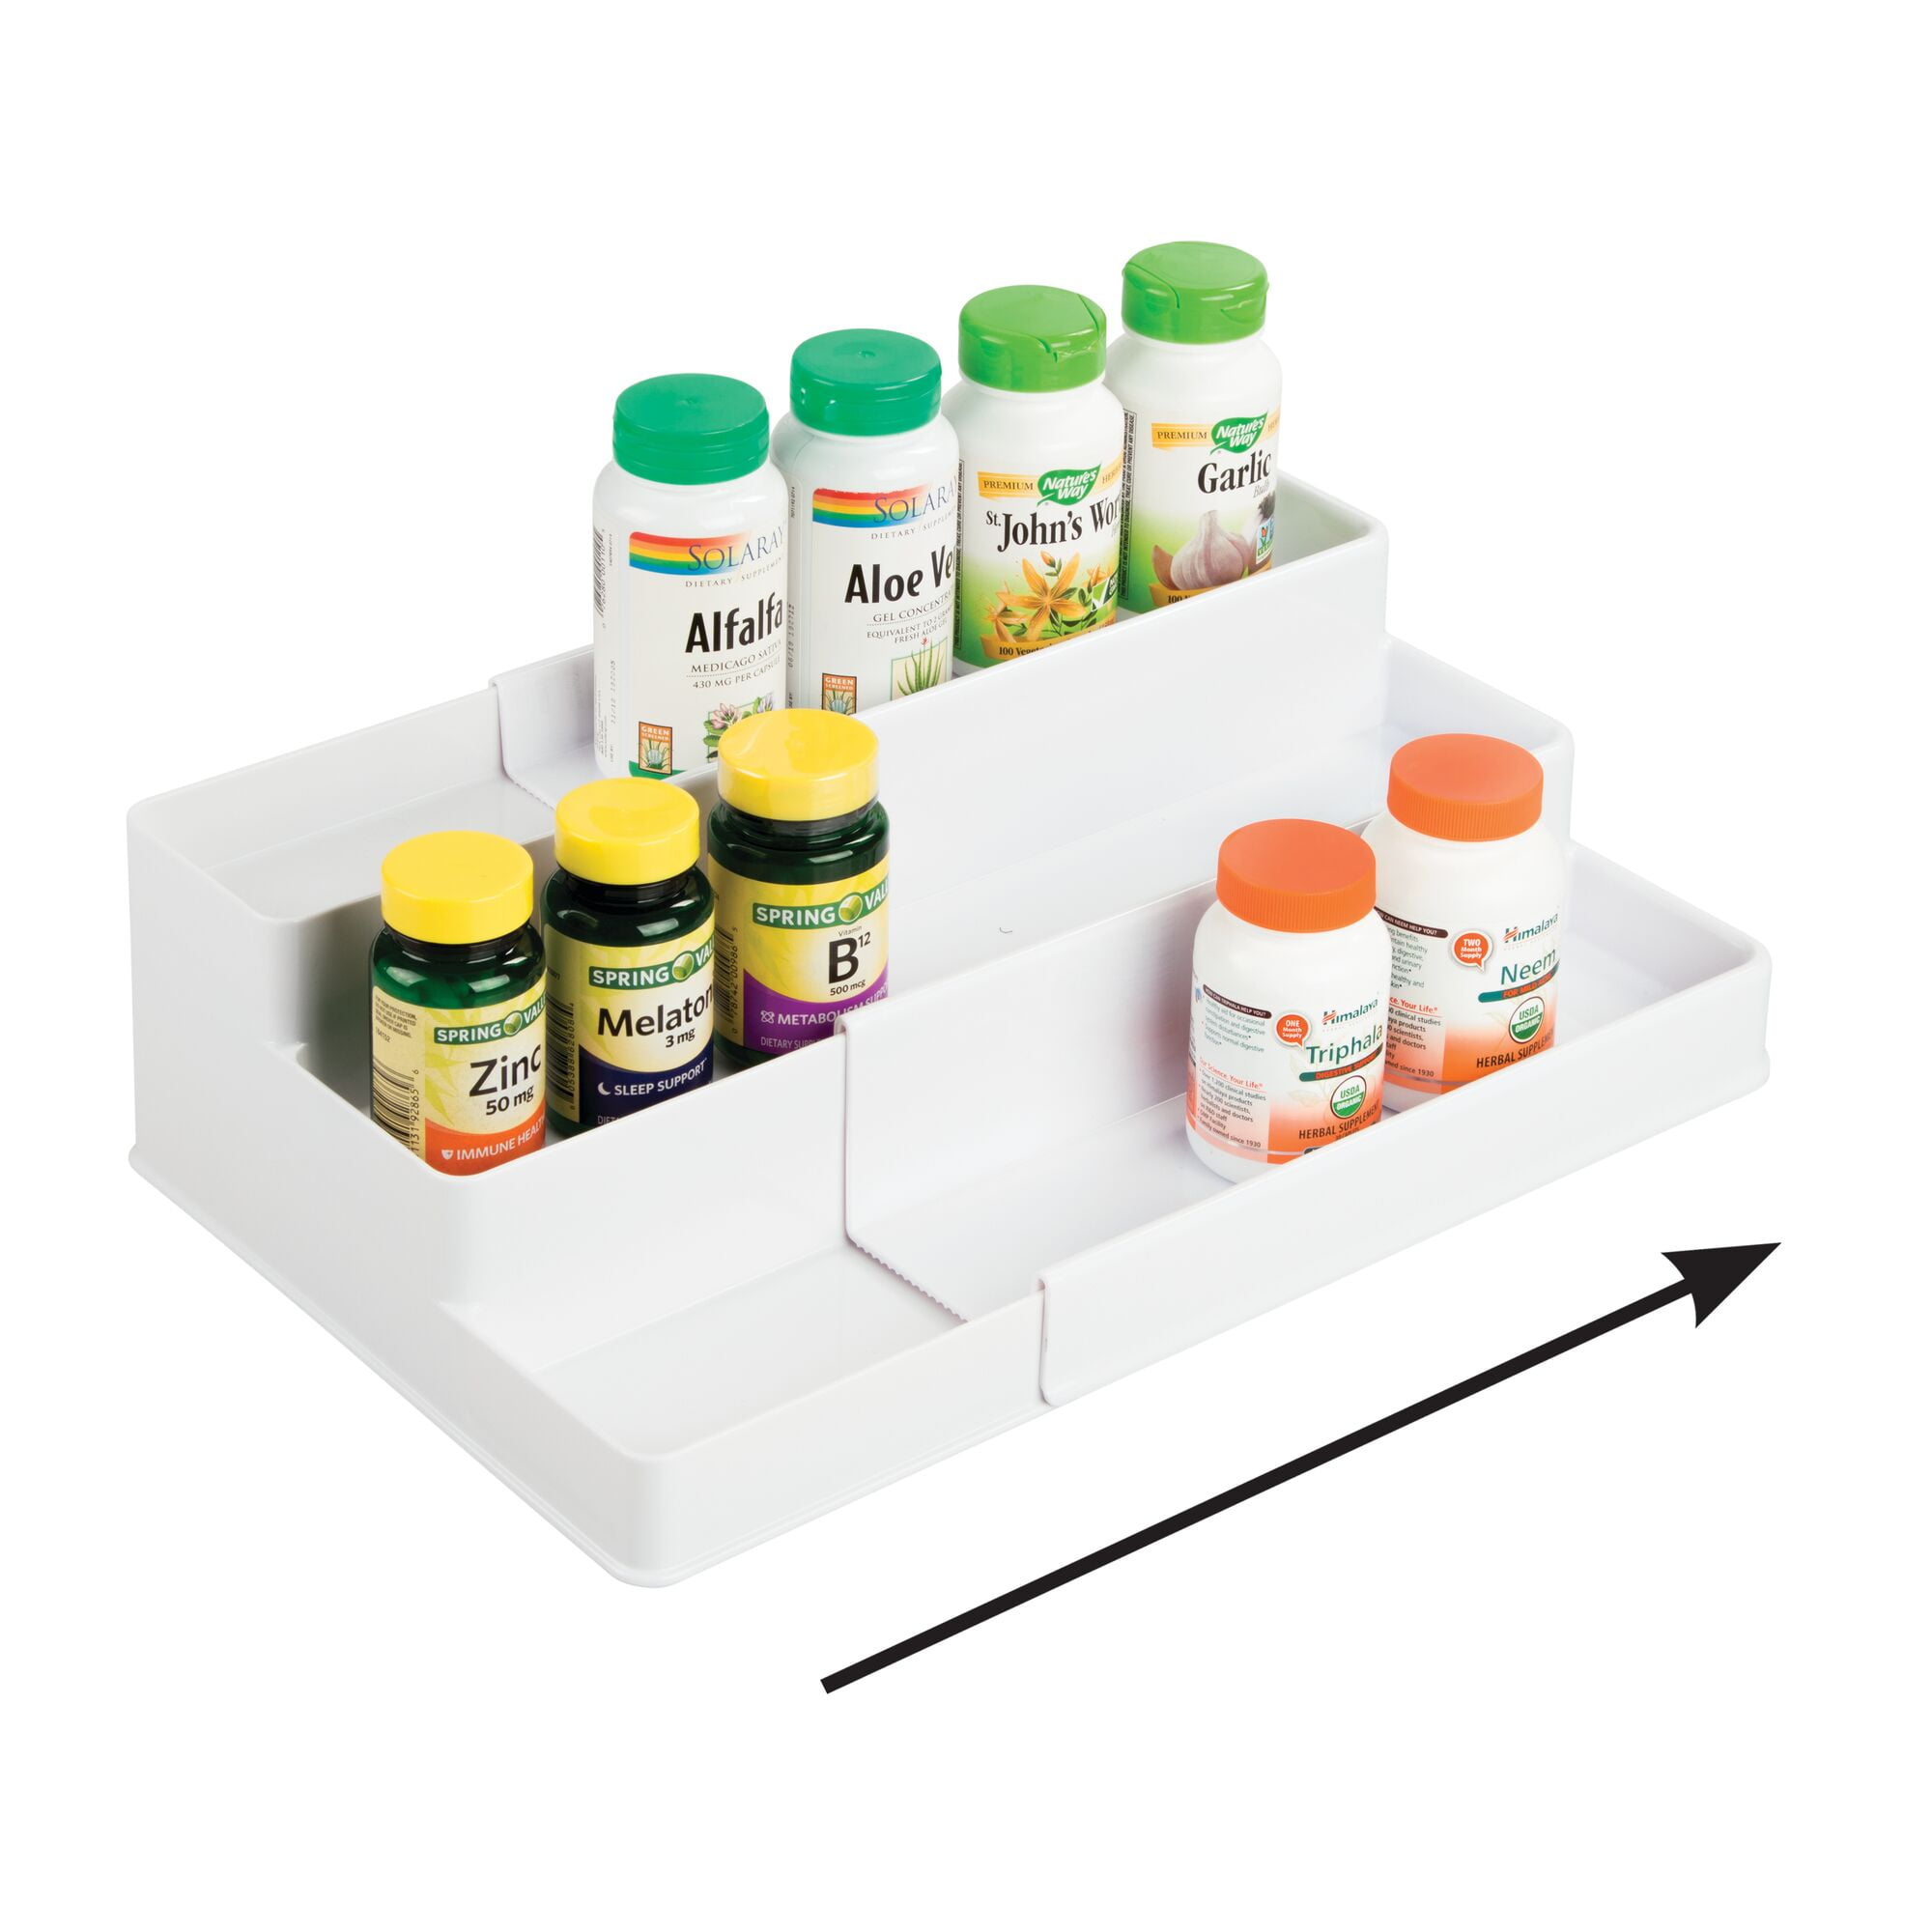 Dutiplus Medicine Organizer 2 Three-Decker Shelves Cabinet Storage Rack Organizer for Holding Vitamins, Supplements Cosmetics 10.82”H x 5.82”W x